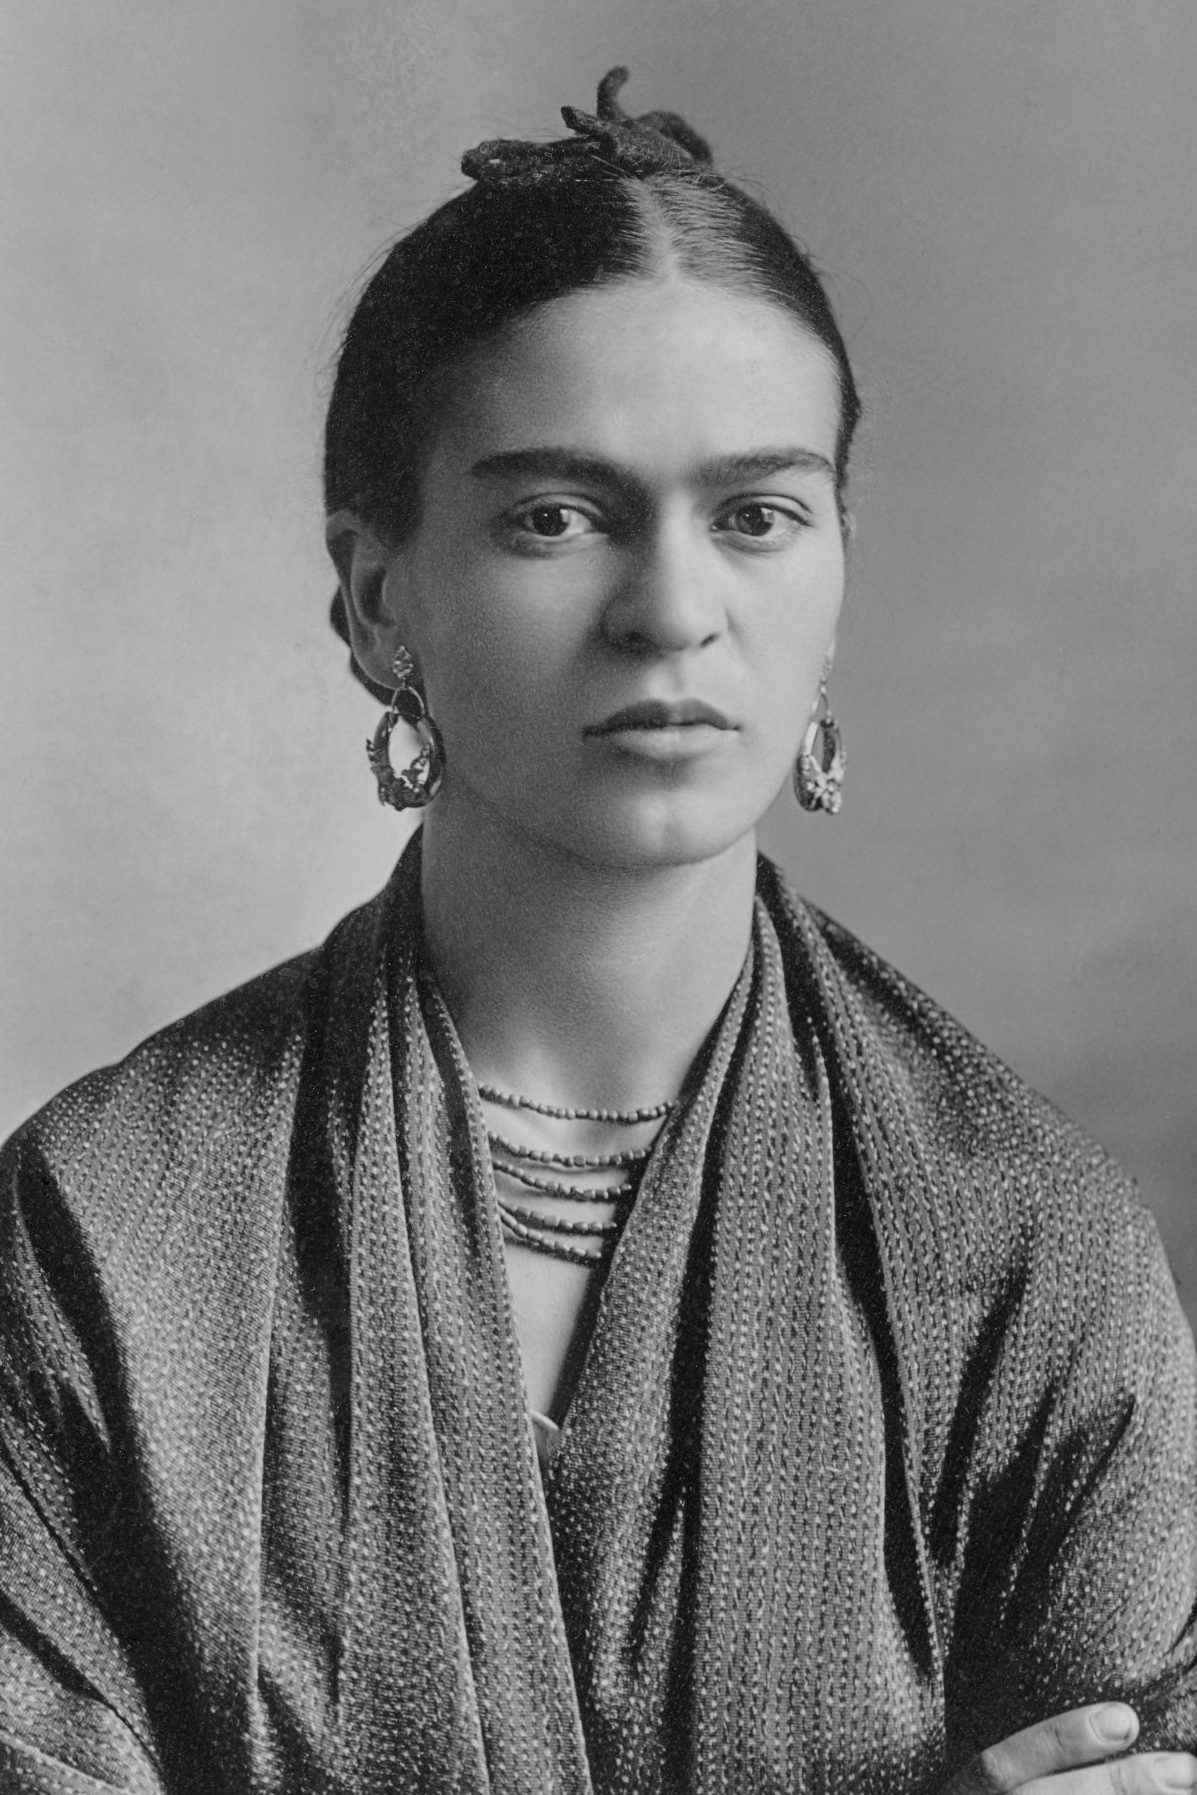 auteur Frida Kahlo de la citation Je peins les autoportraits parce que je suis si souvent seul, parce que je suis la personne que je connais le mieux.